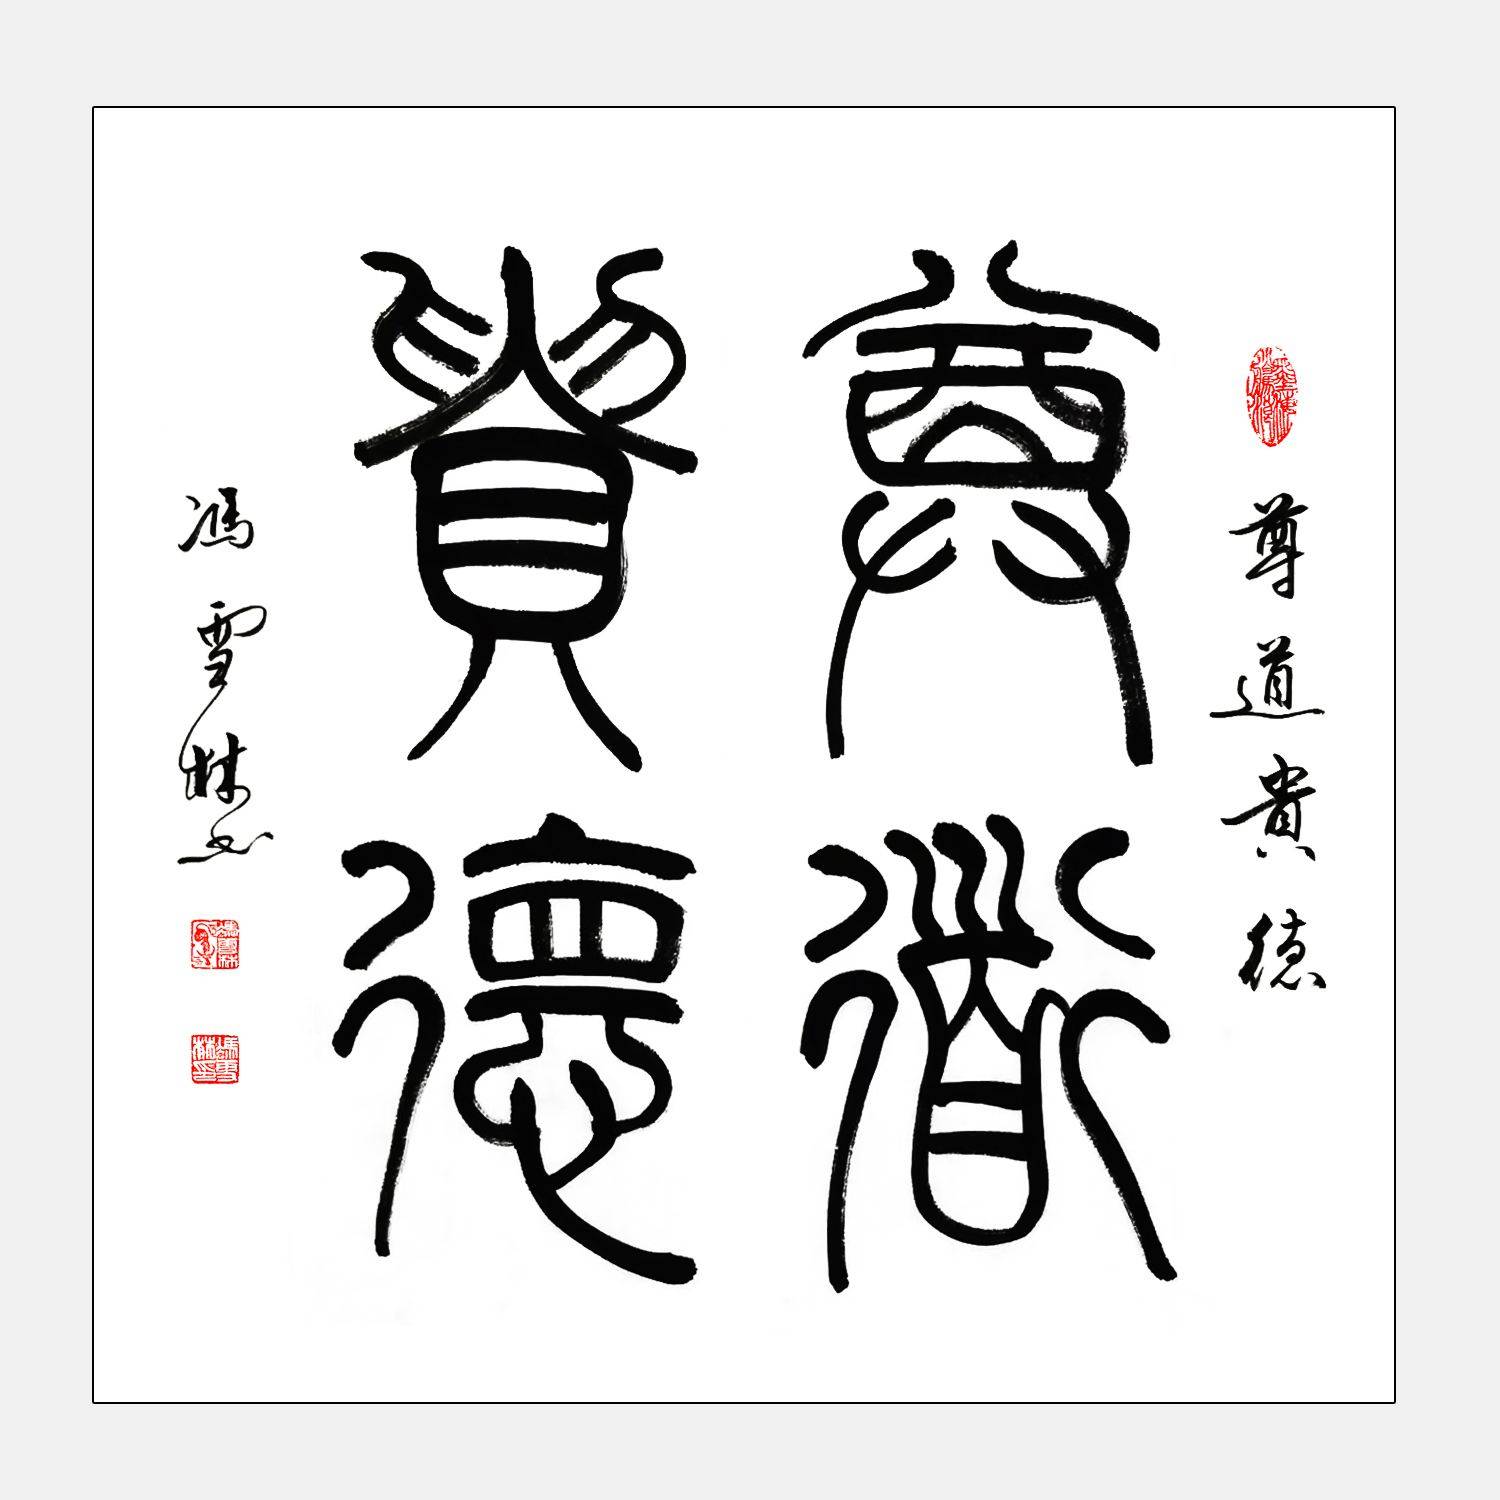 文字的发展（“汉字”字体是如何发展到现在的？）-第1张图片